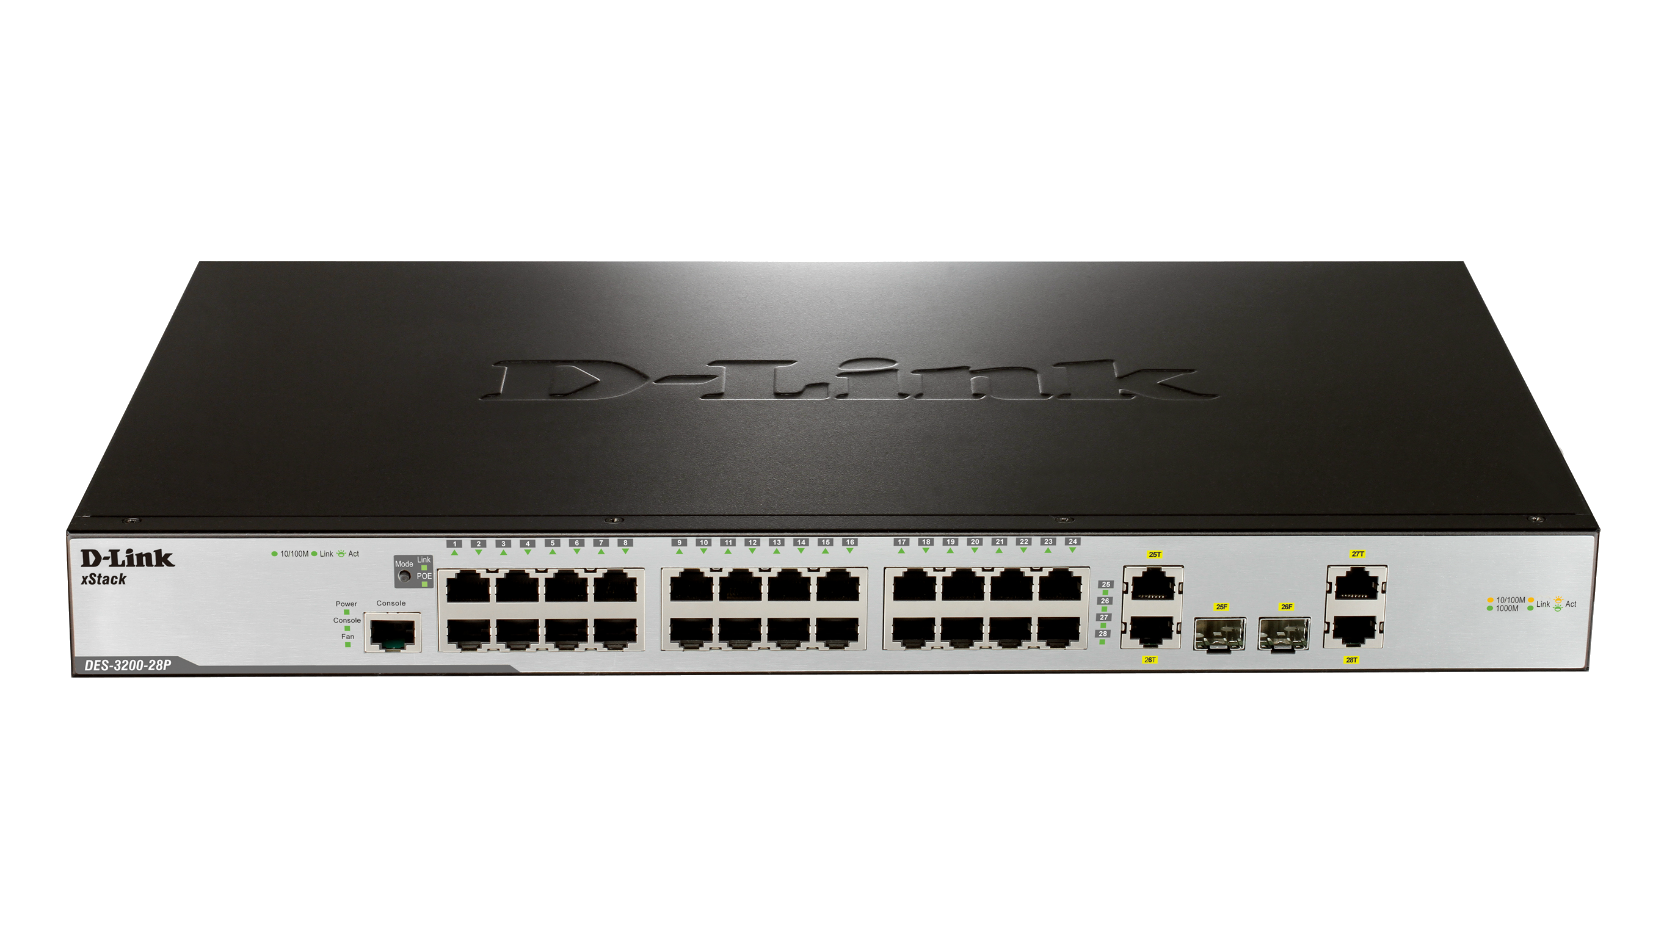 DES-3200-10, DES-3200-18, DES-3200-28, DES-3200-28P, DES-3200-52,  DES-3200-52P xStack Fast Ethernet L2 Managed Switches